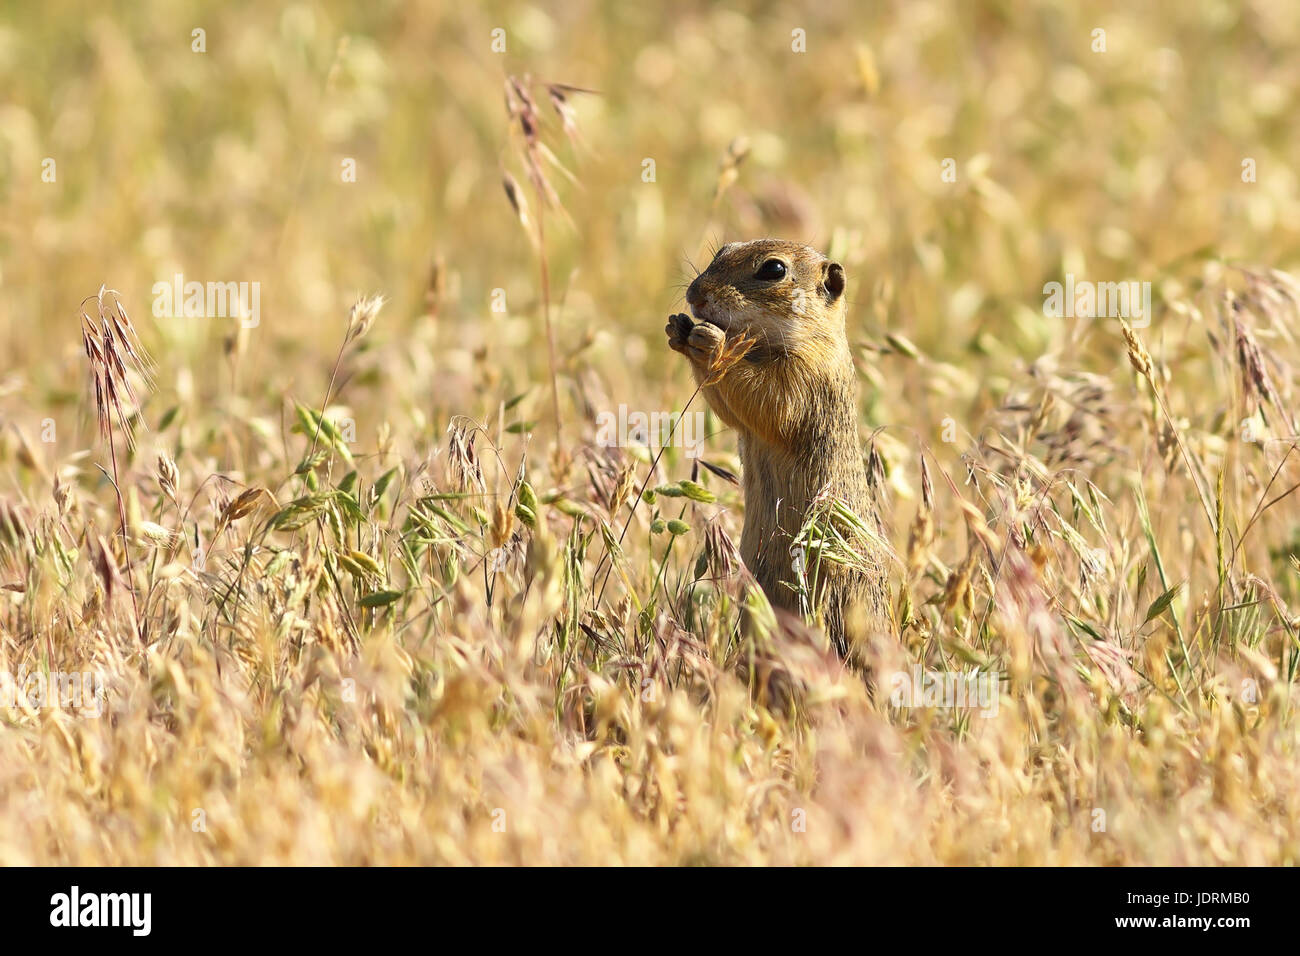 Terreno europeo scoiattolo in habitat naturali, cute animale giovane mangiare ( Spermophilus citellus ) Foto Stock